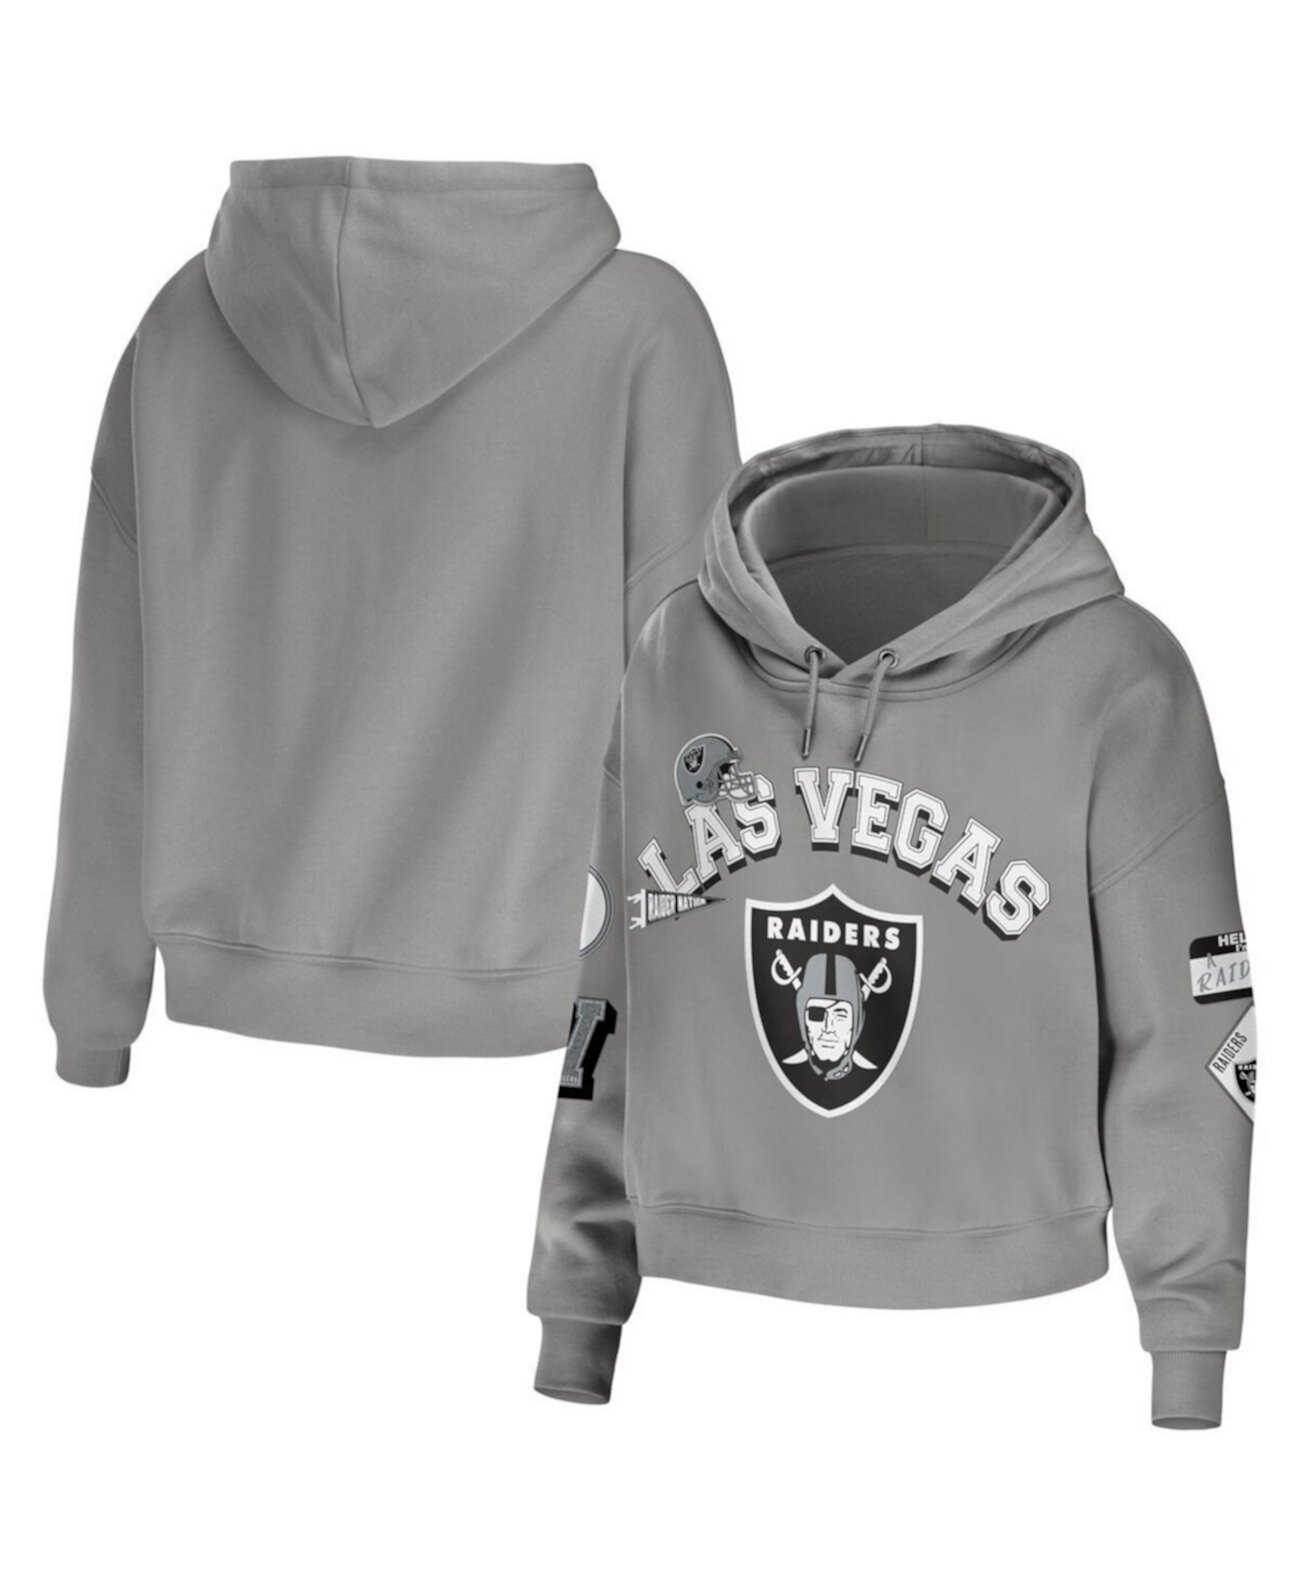 Женский серый укороченный пуловер с капюшоном Las Vegas Raiders размера плюс WEAR by Erin Andrews